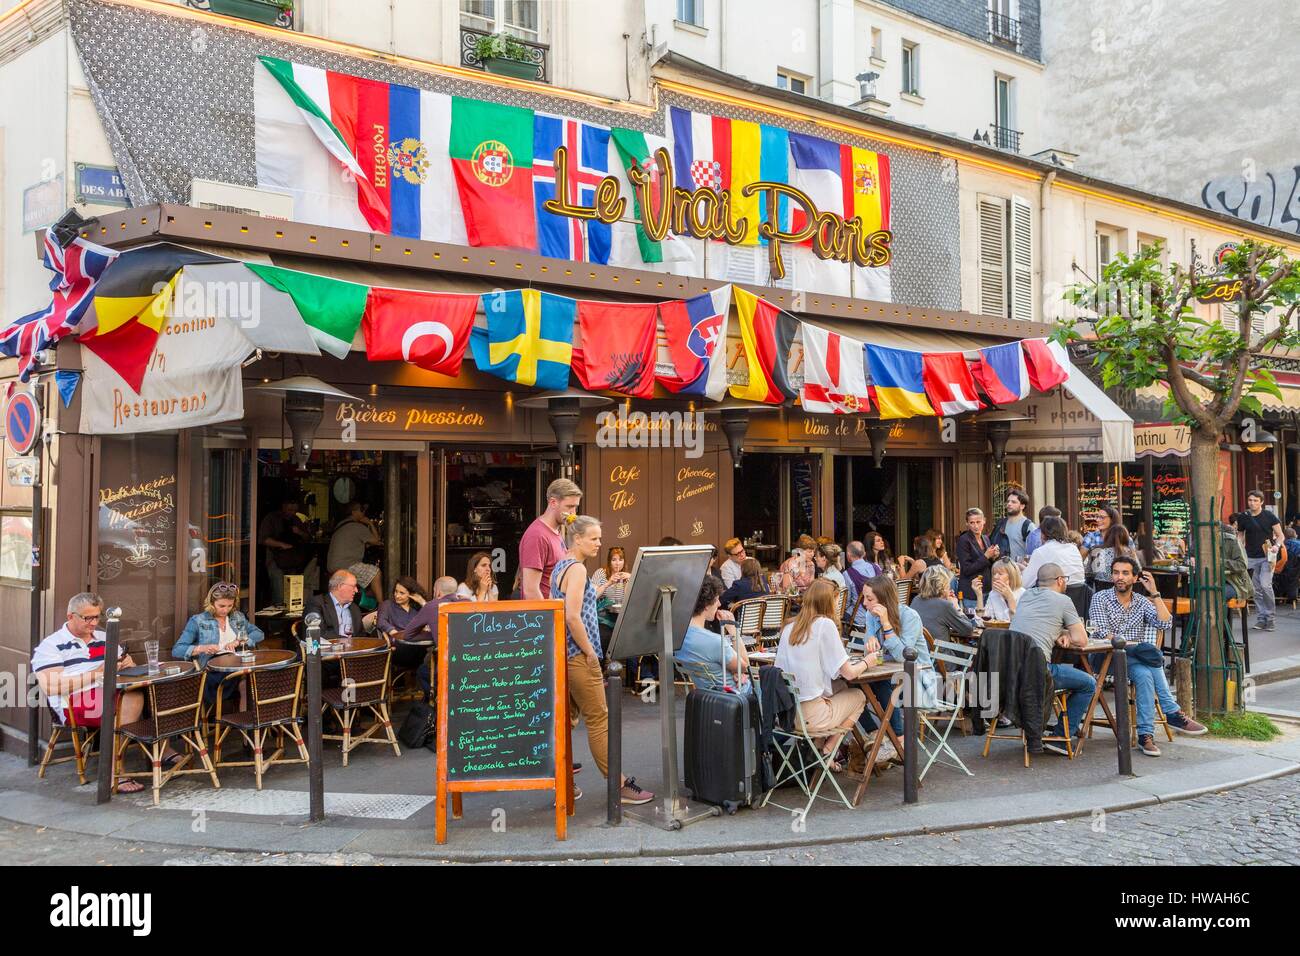 France, Paris, Montmartre district, restaurant Le Vrai Paris, rue des Abbesses Stock Photo